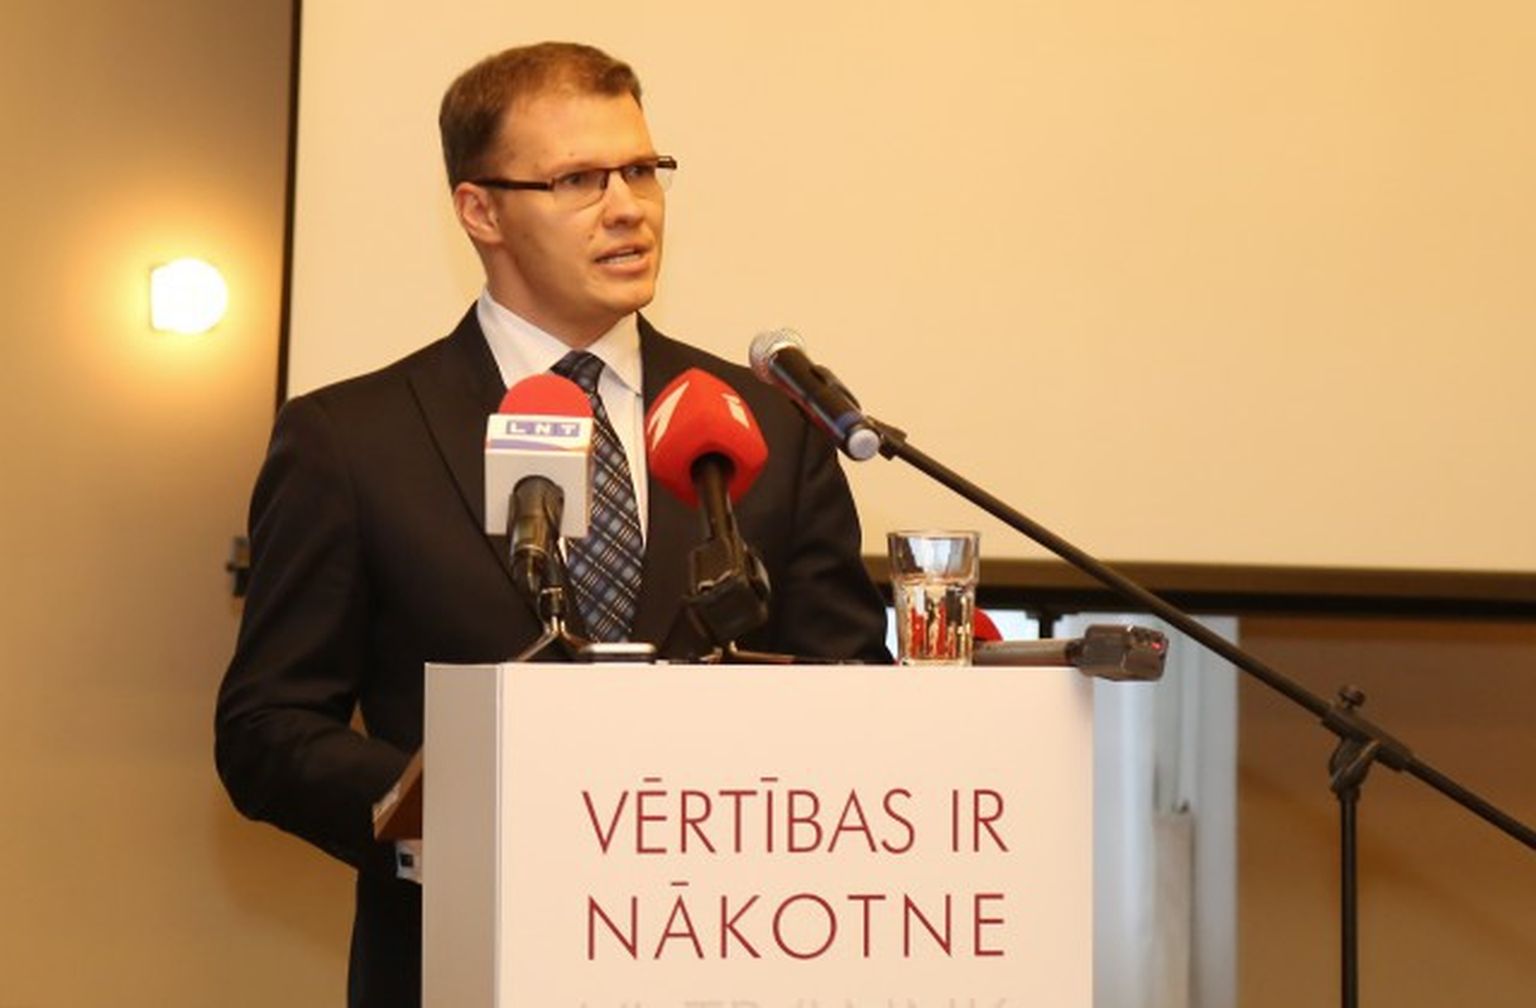 Nacionālās apvienības līdzpriekšsēdētājs Raivis Dzintars Nacionālās apvienības "Visu Latvijai!"-"Tēvzemei un brīvībai"/LNNK kongresā Rīgas Latviešu biedrības namā